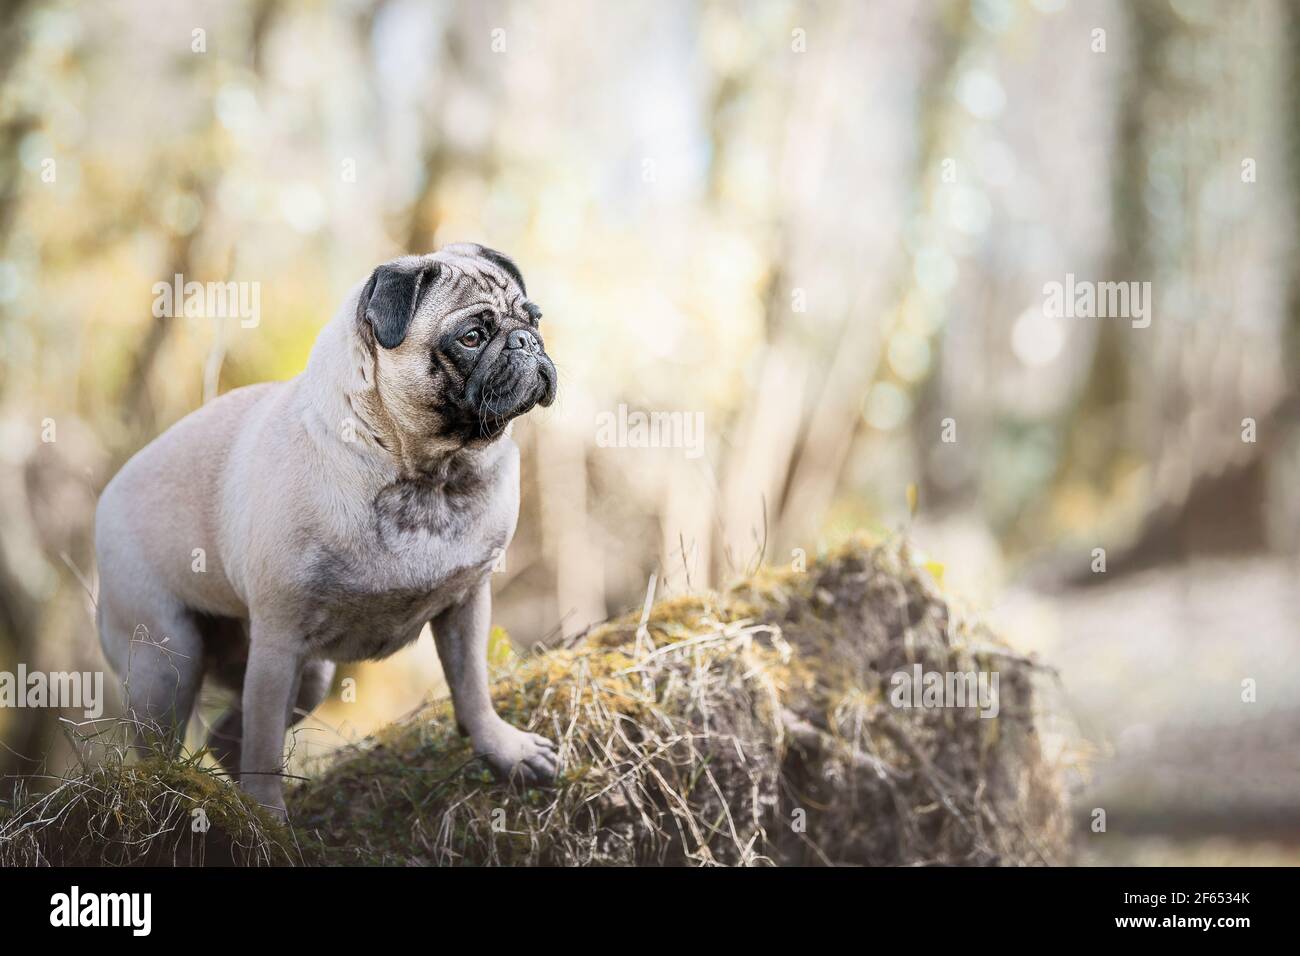 pug dog in woodland Stock Photo